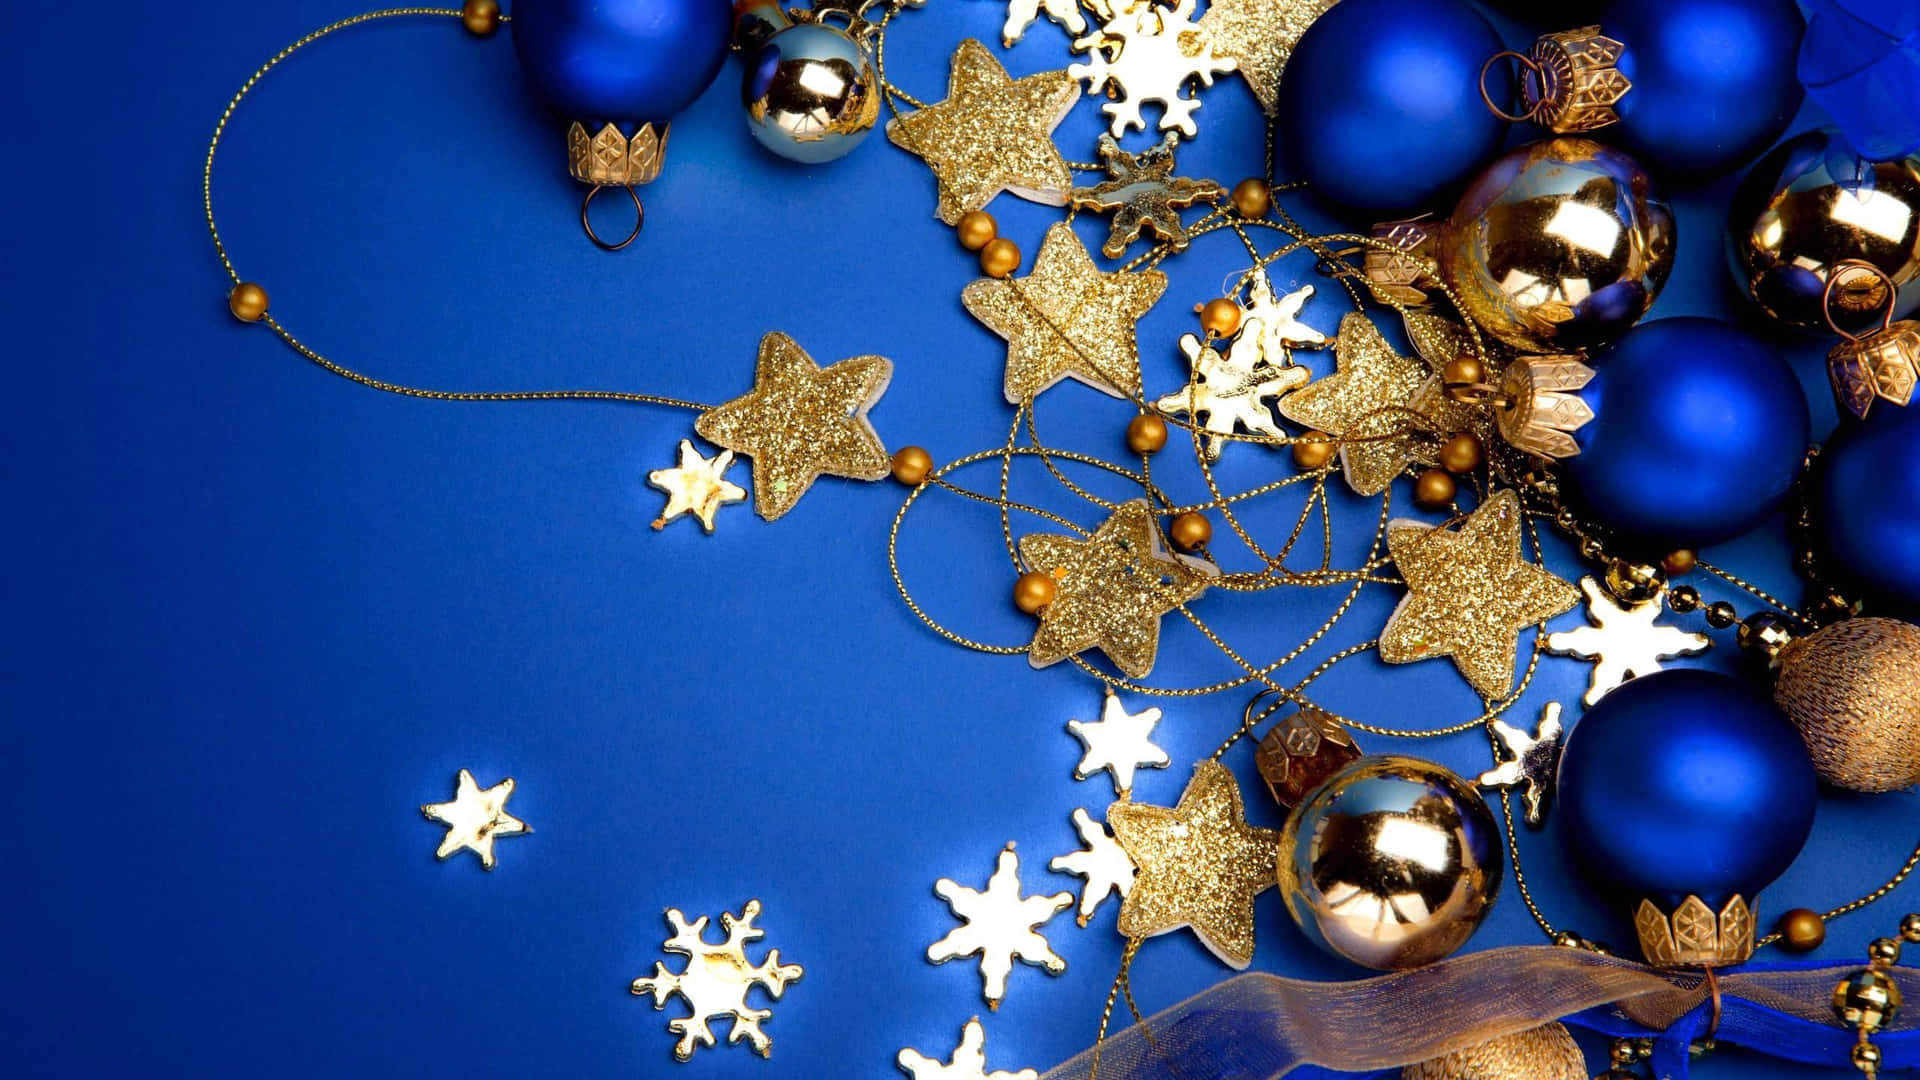 Føl roen og freden i sæsonen med dette smukke, blå julebillede. Wallpaper